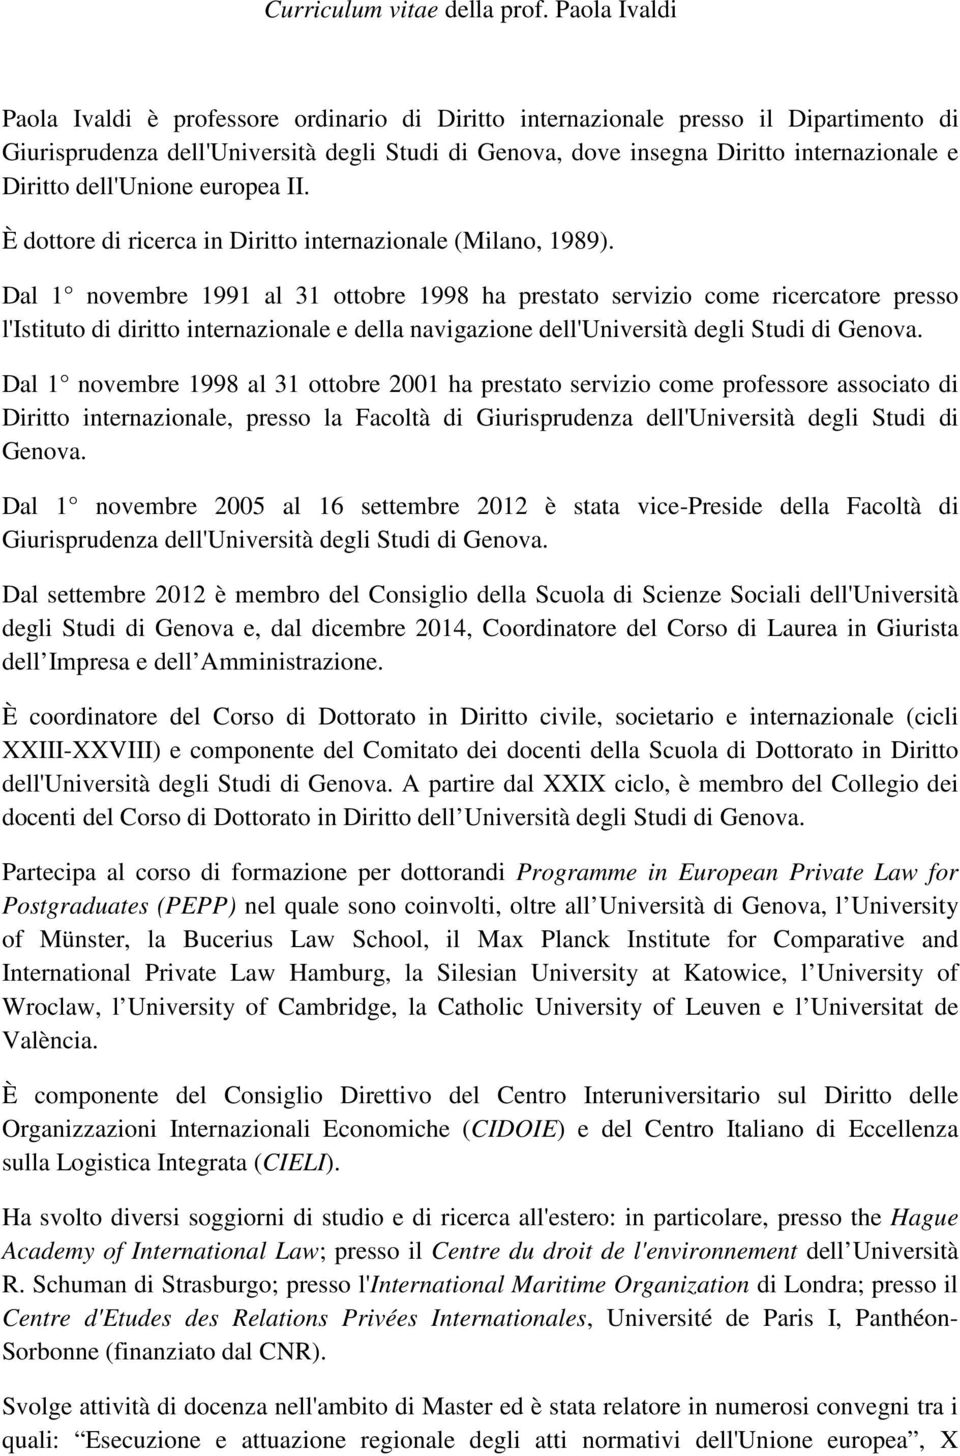 Diritto dell'unione europea II. È dottore di ricerca in Diritto internazionale (Milano, 1989).